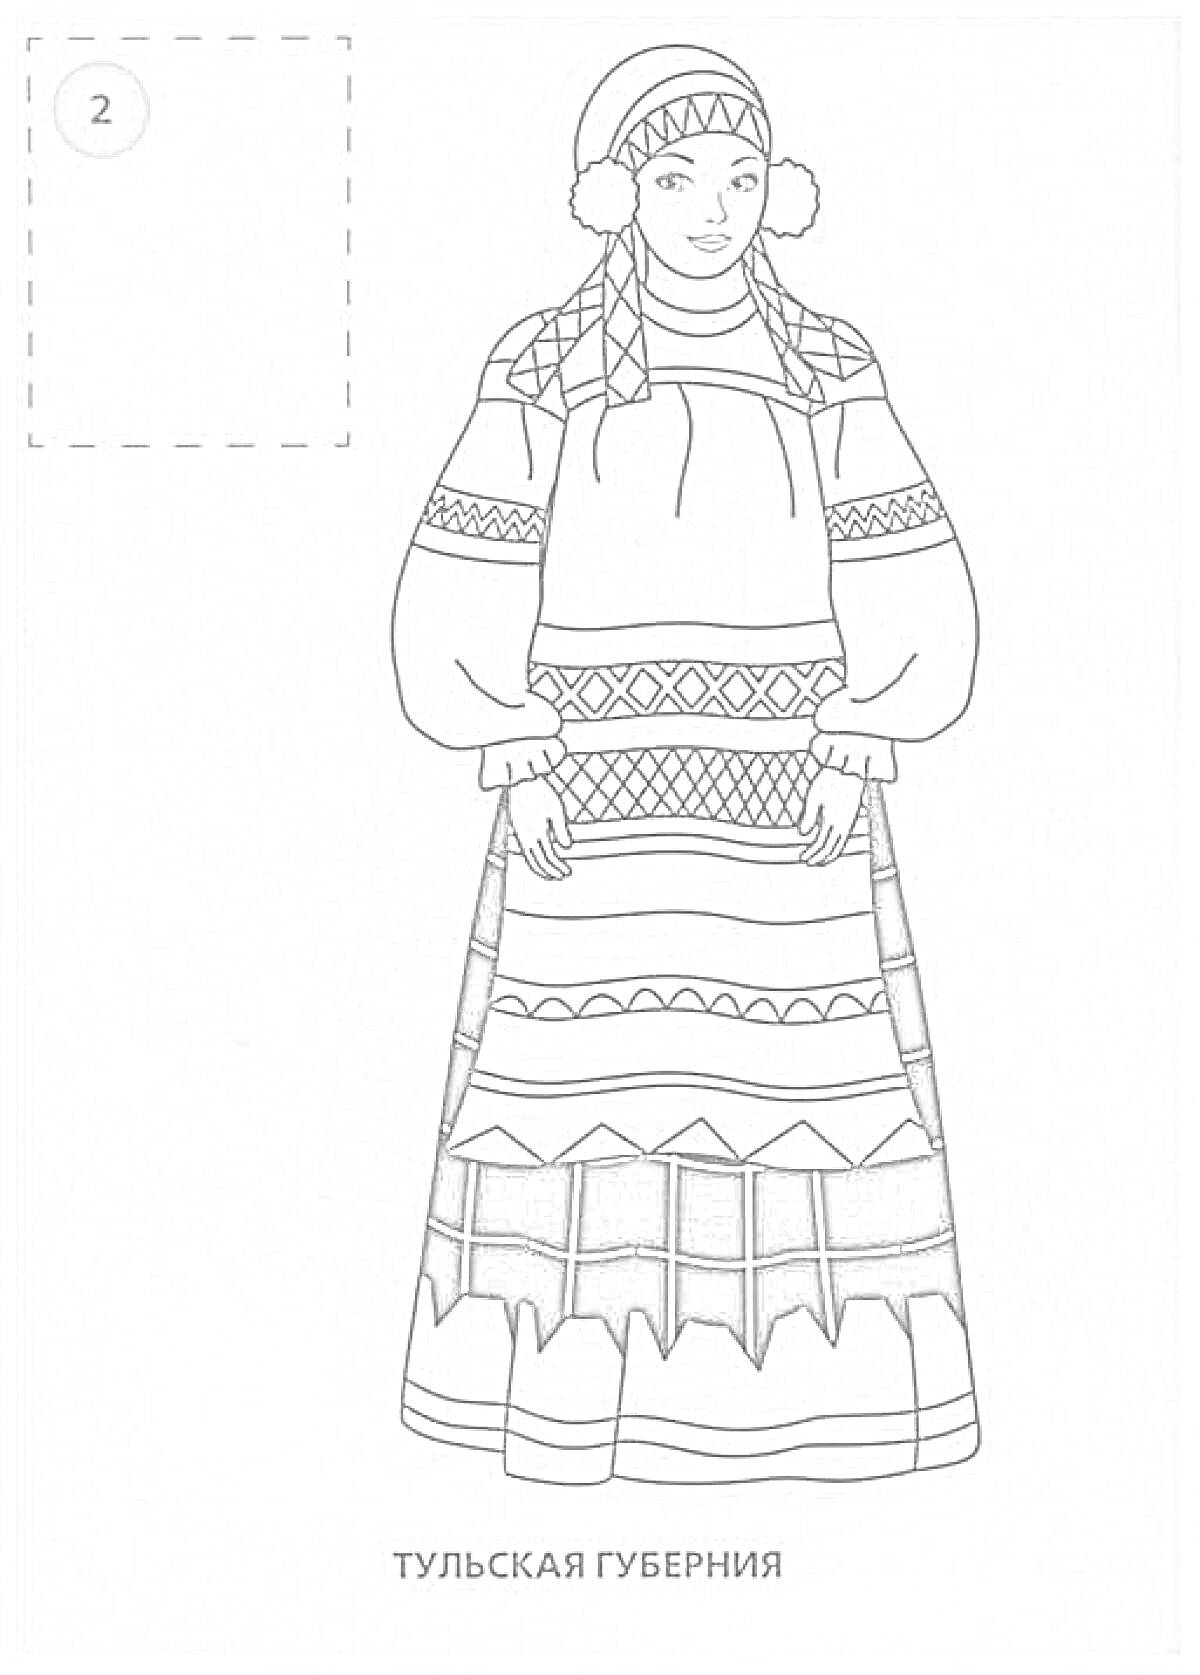 Костюм женщины из Тульской губернии, включающий головной убор с узорами, рубаху с широкими рукавами и поясом, сарафан с орнаментами различной формы и цвета, а также обувь.